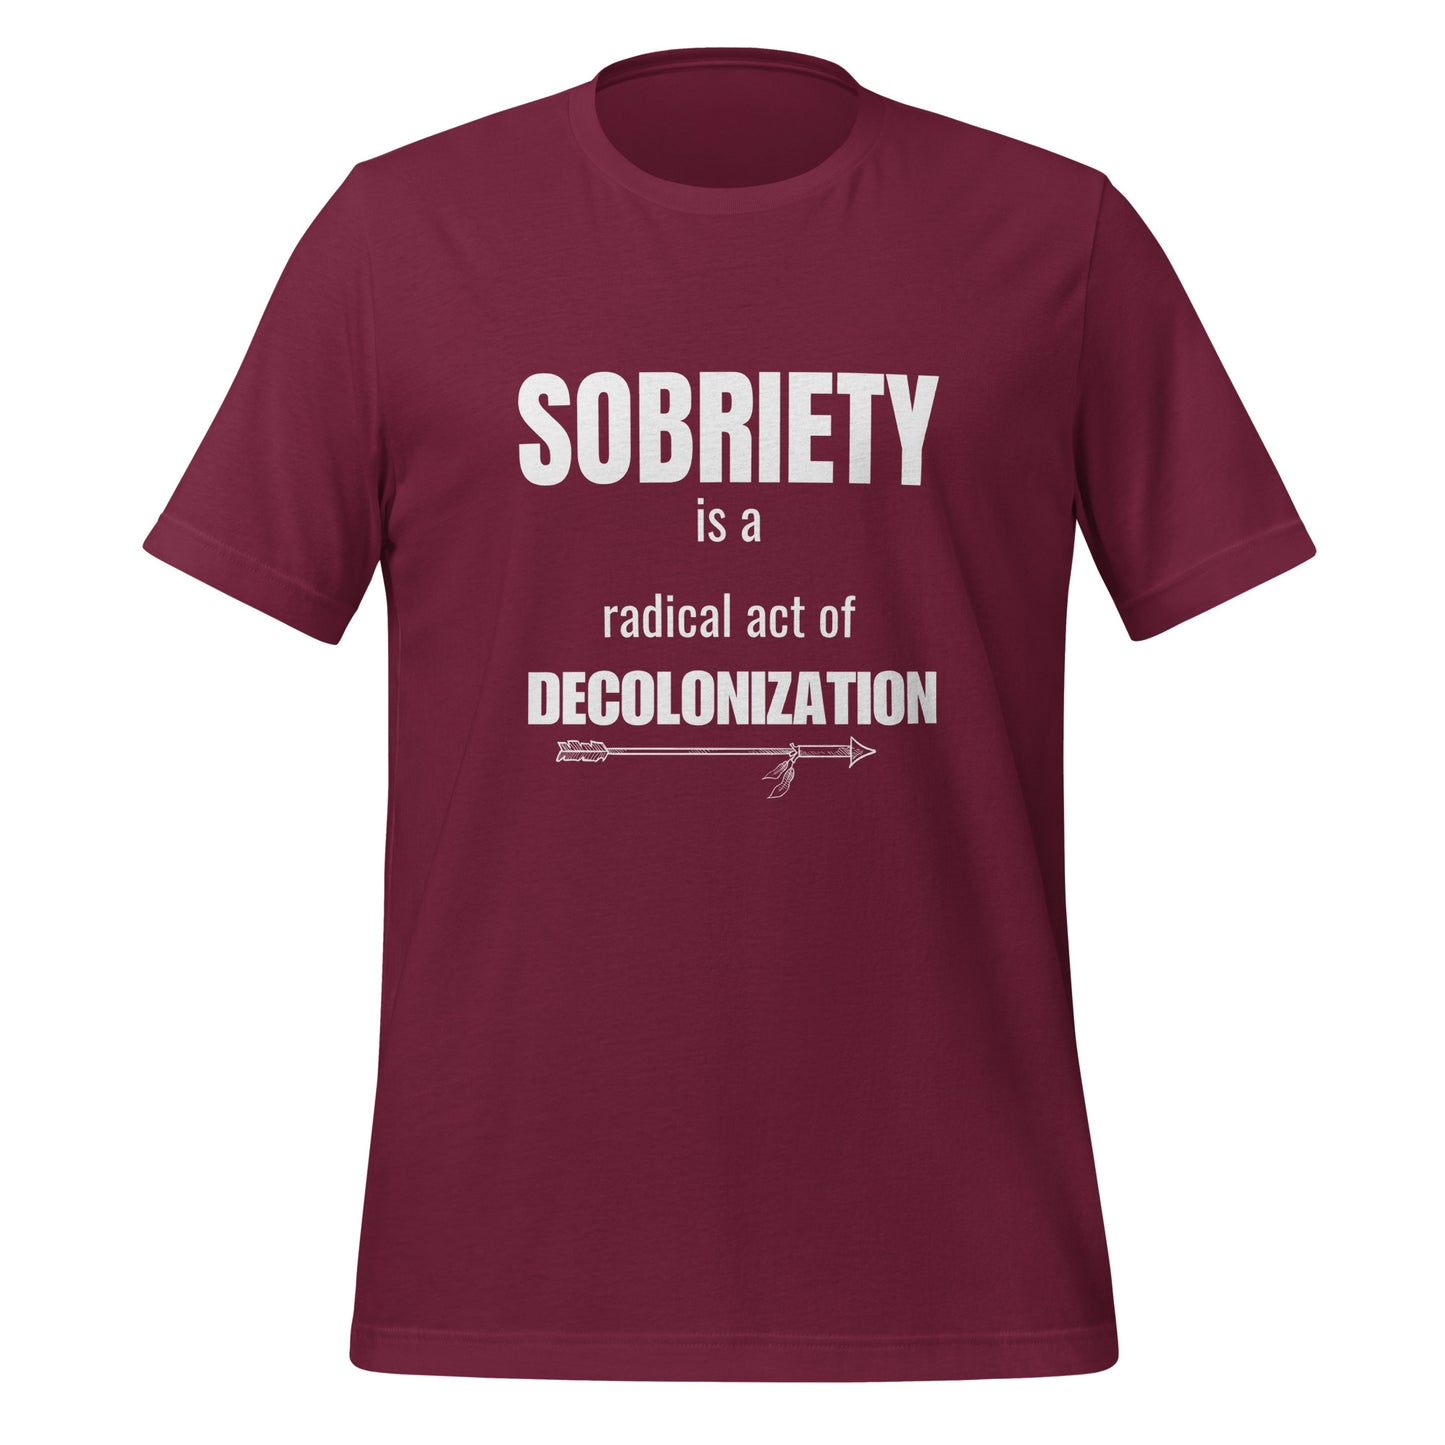 Sobriety is Decolonization Unisex T-shirt